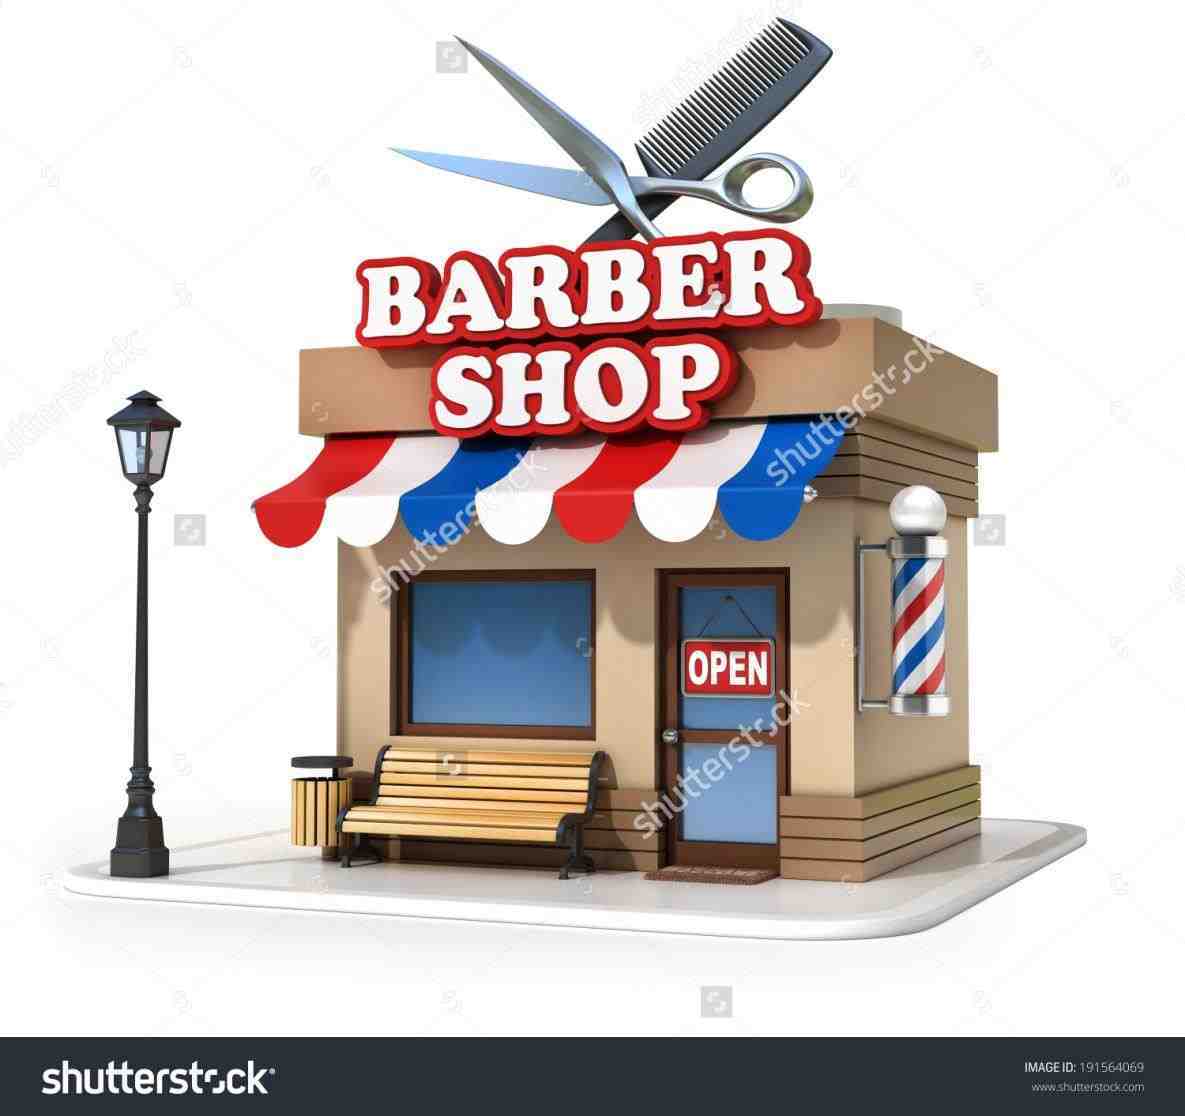 Building clipartrhlaobloggercom shopbarbershopbuildingclipartbuildingclipartrhlaobloggercomcartoon. Barber clipart barber shop